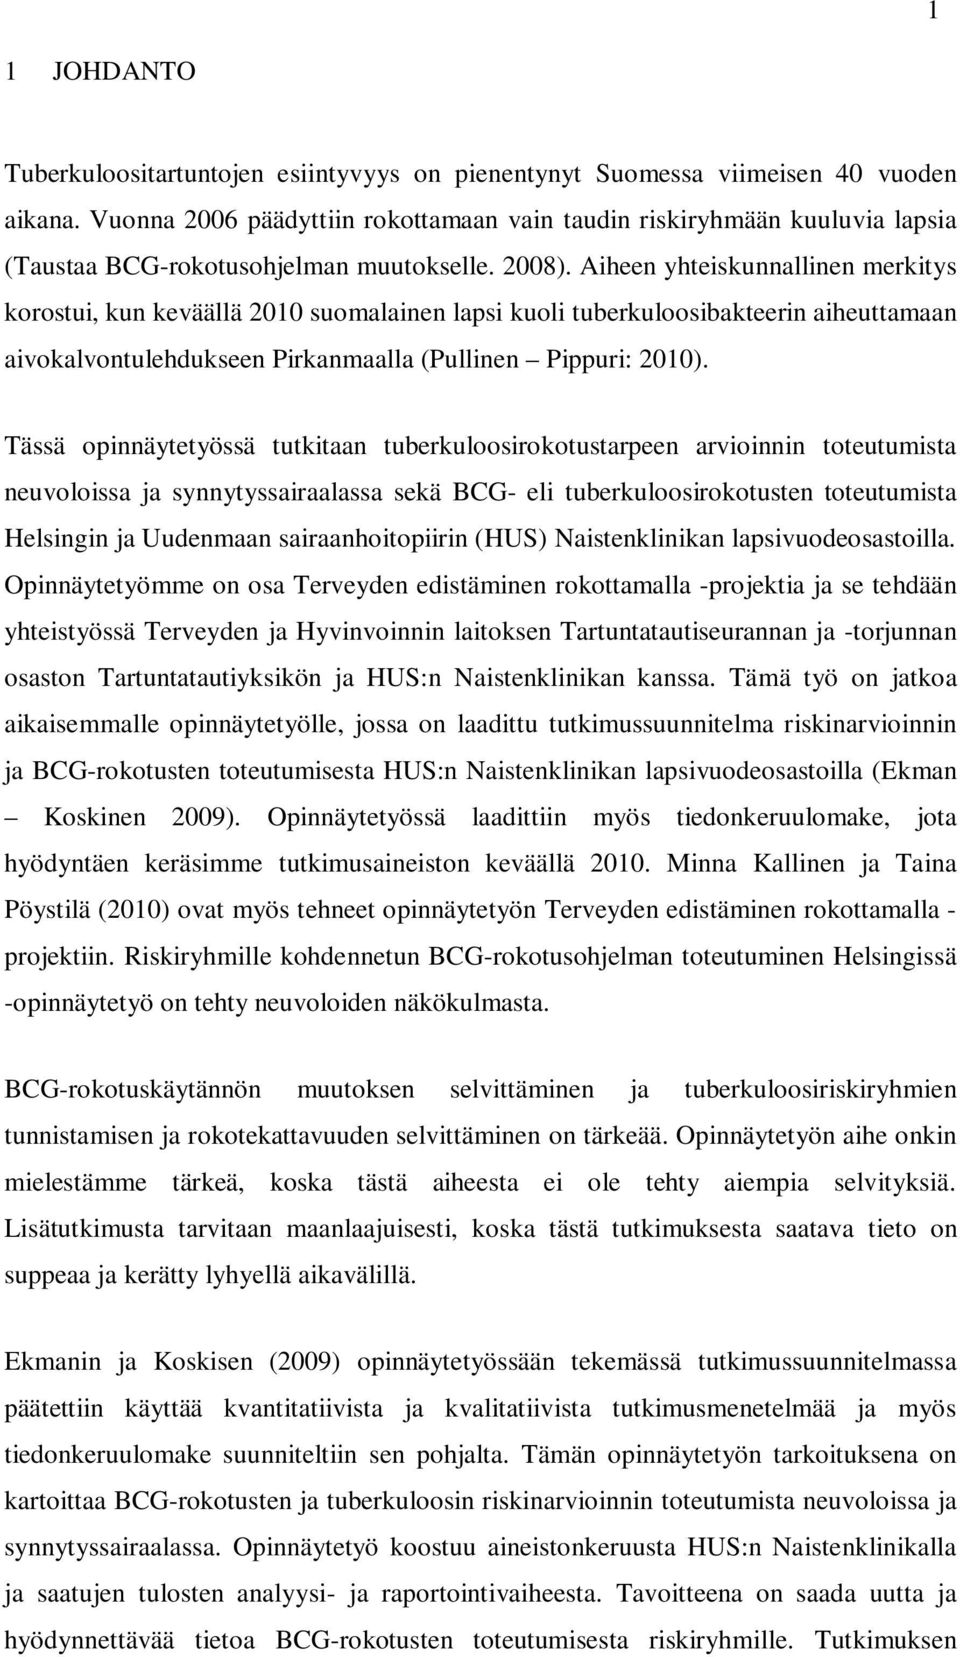 Aiheen yhteiskunnallinen merkitys korostui, kun keväällä 2010 suomalainen lapsi kuoli tuberkuloosibakteerin aiheuttamaan aivokalvontulehdukseen Pirkanmaalla (Pullinen Pippuri: 2010).